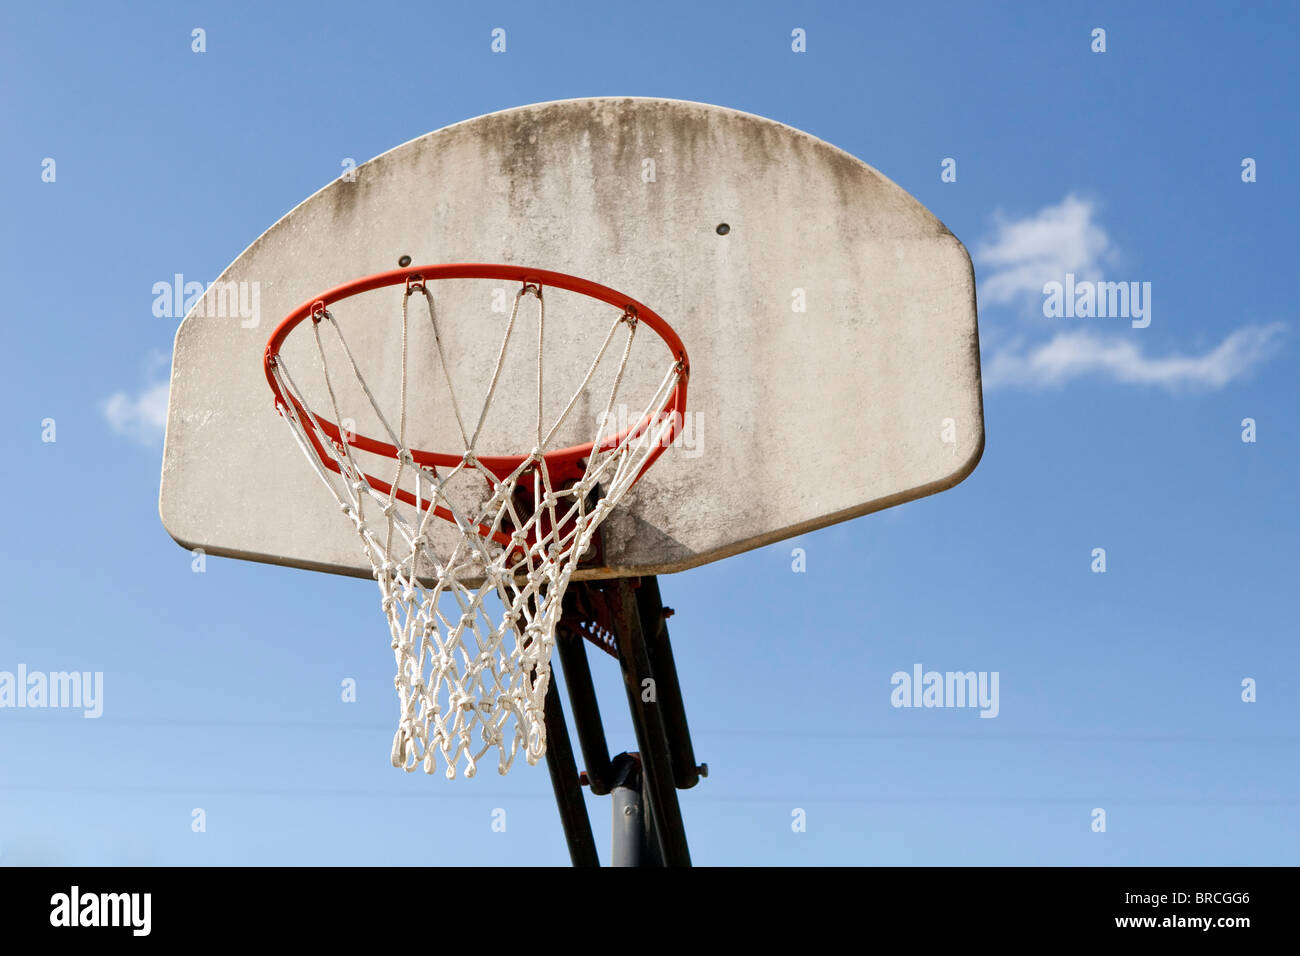 Un capeado tablero de baloncesto de fibra de vidrio, adjunto con rim y net  contra un cielo azul. Se centra en la llanta y neto Fotografía de stock -  Alamy